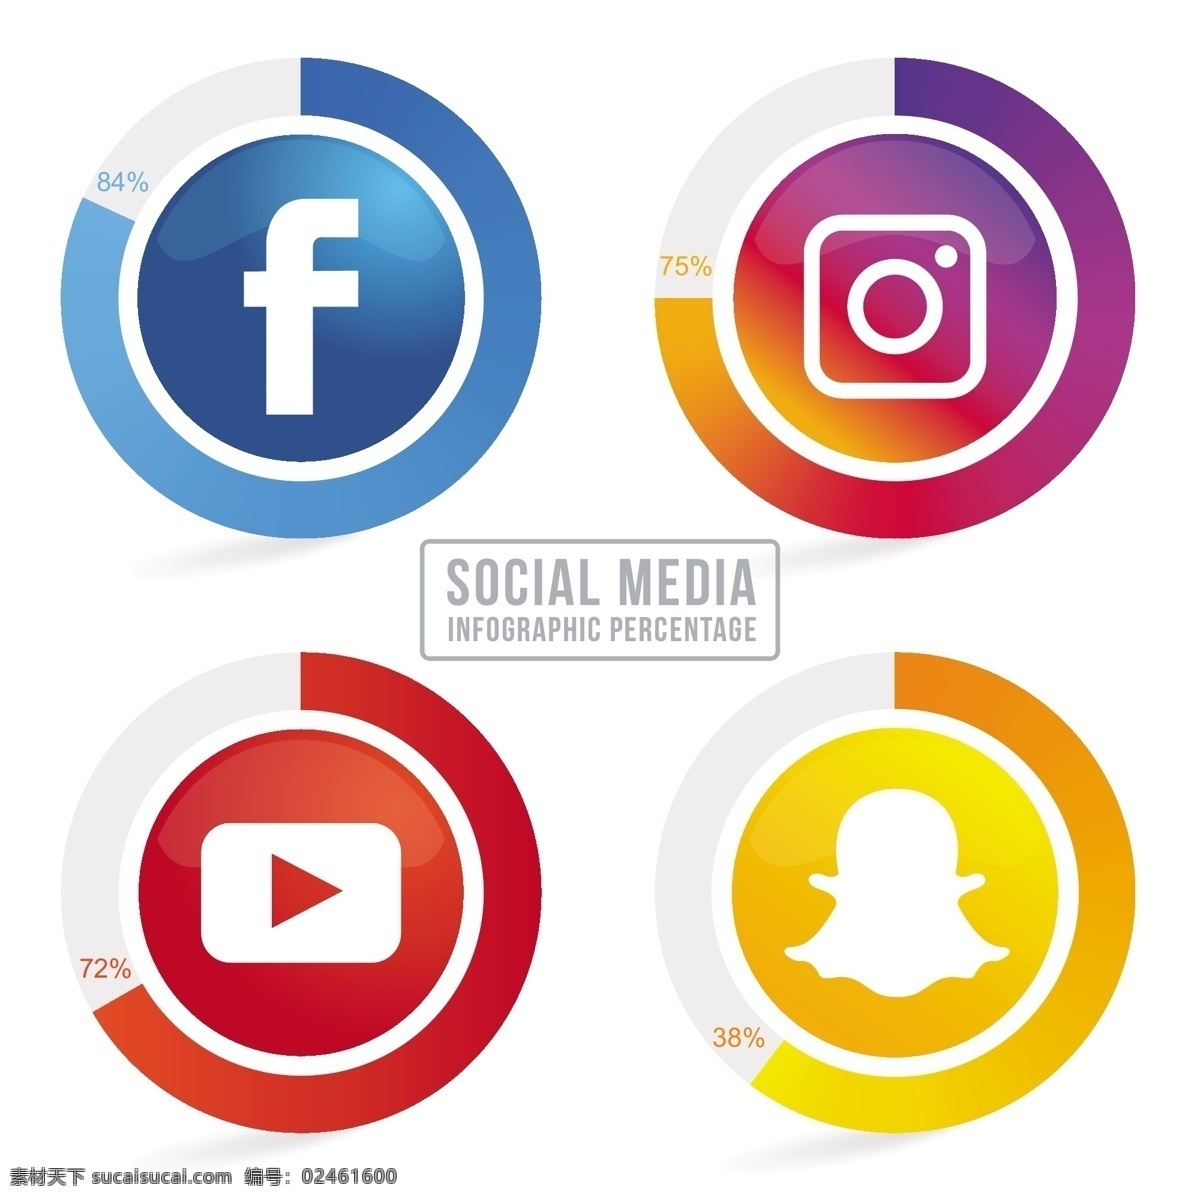 四 社会 网络 图标 图表 资源 业务 模板 绿色 社会媒体 信息图表 市场营销 钻石 图形 符号 单位 社会的过程中 品牌 资料 现代信息